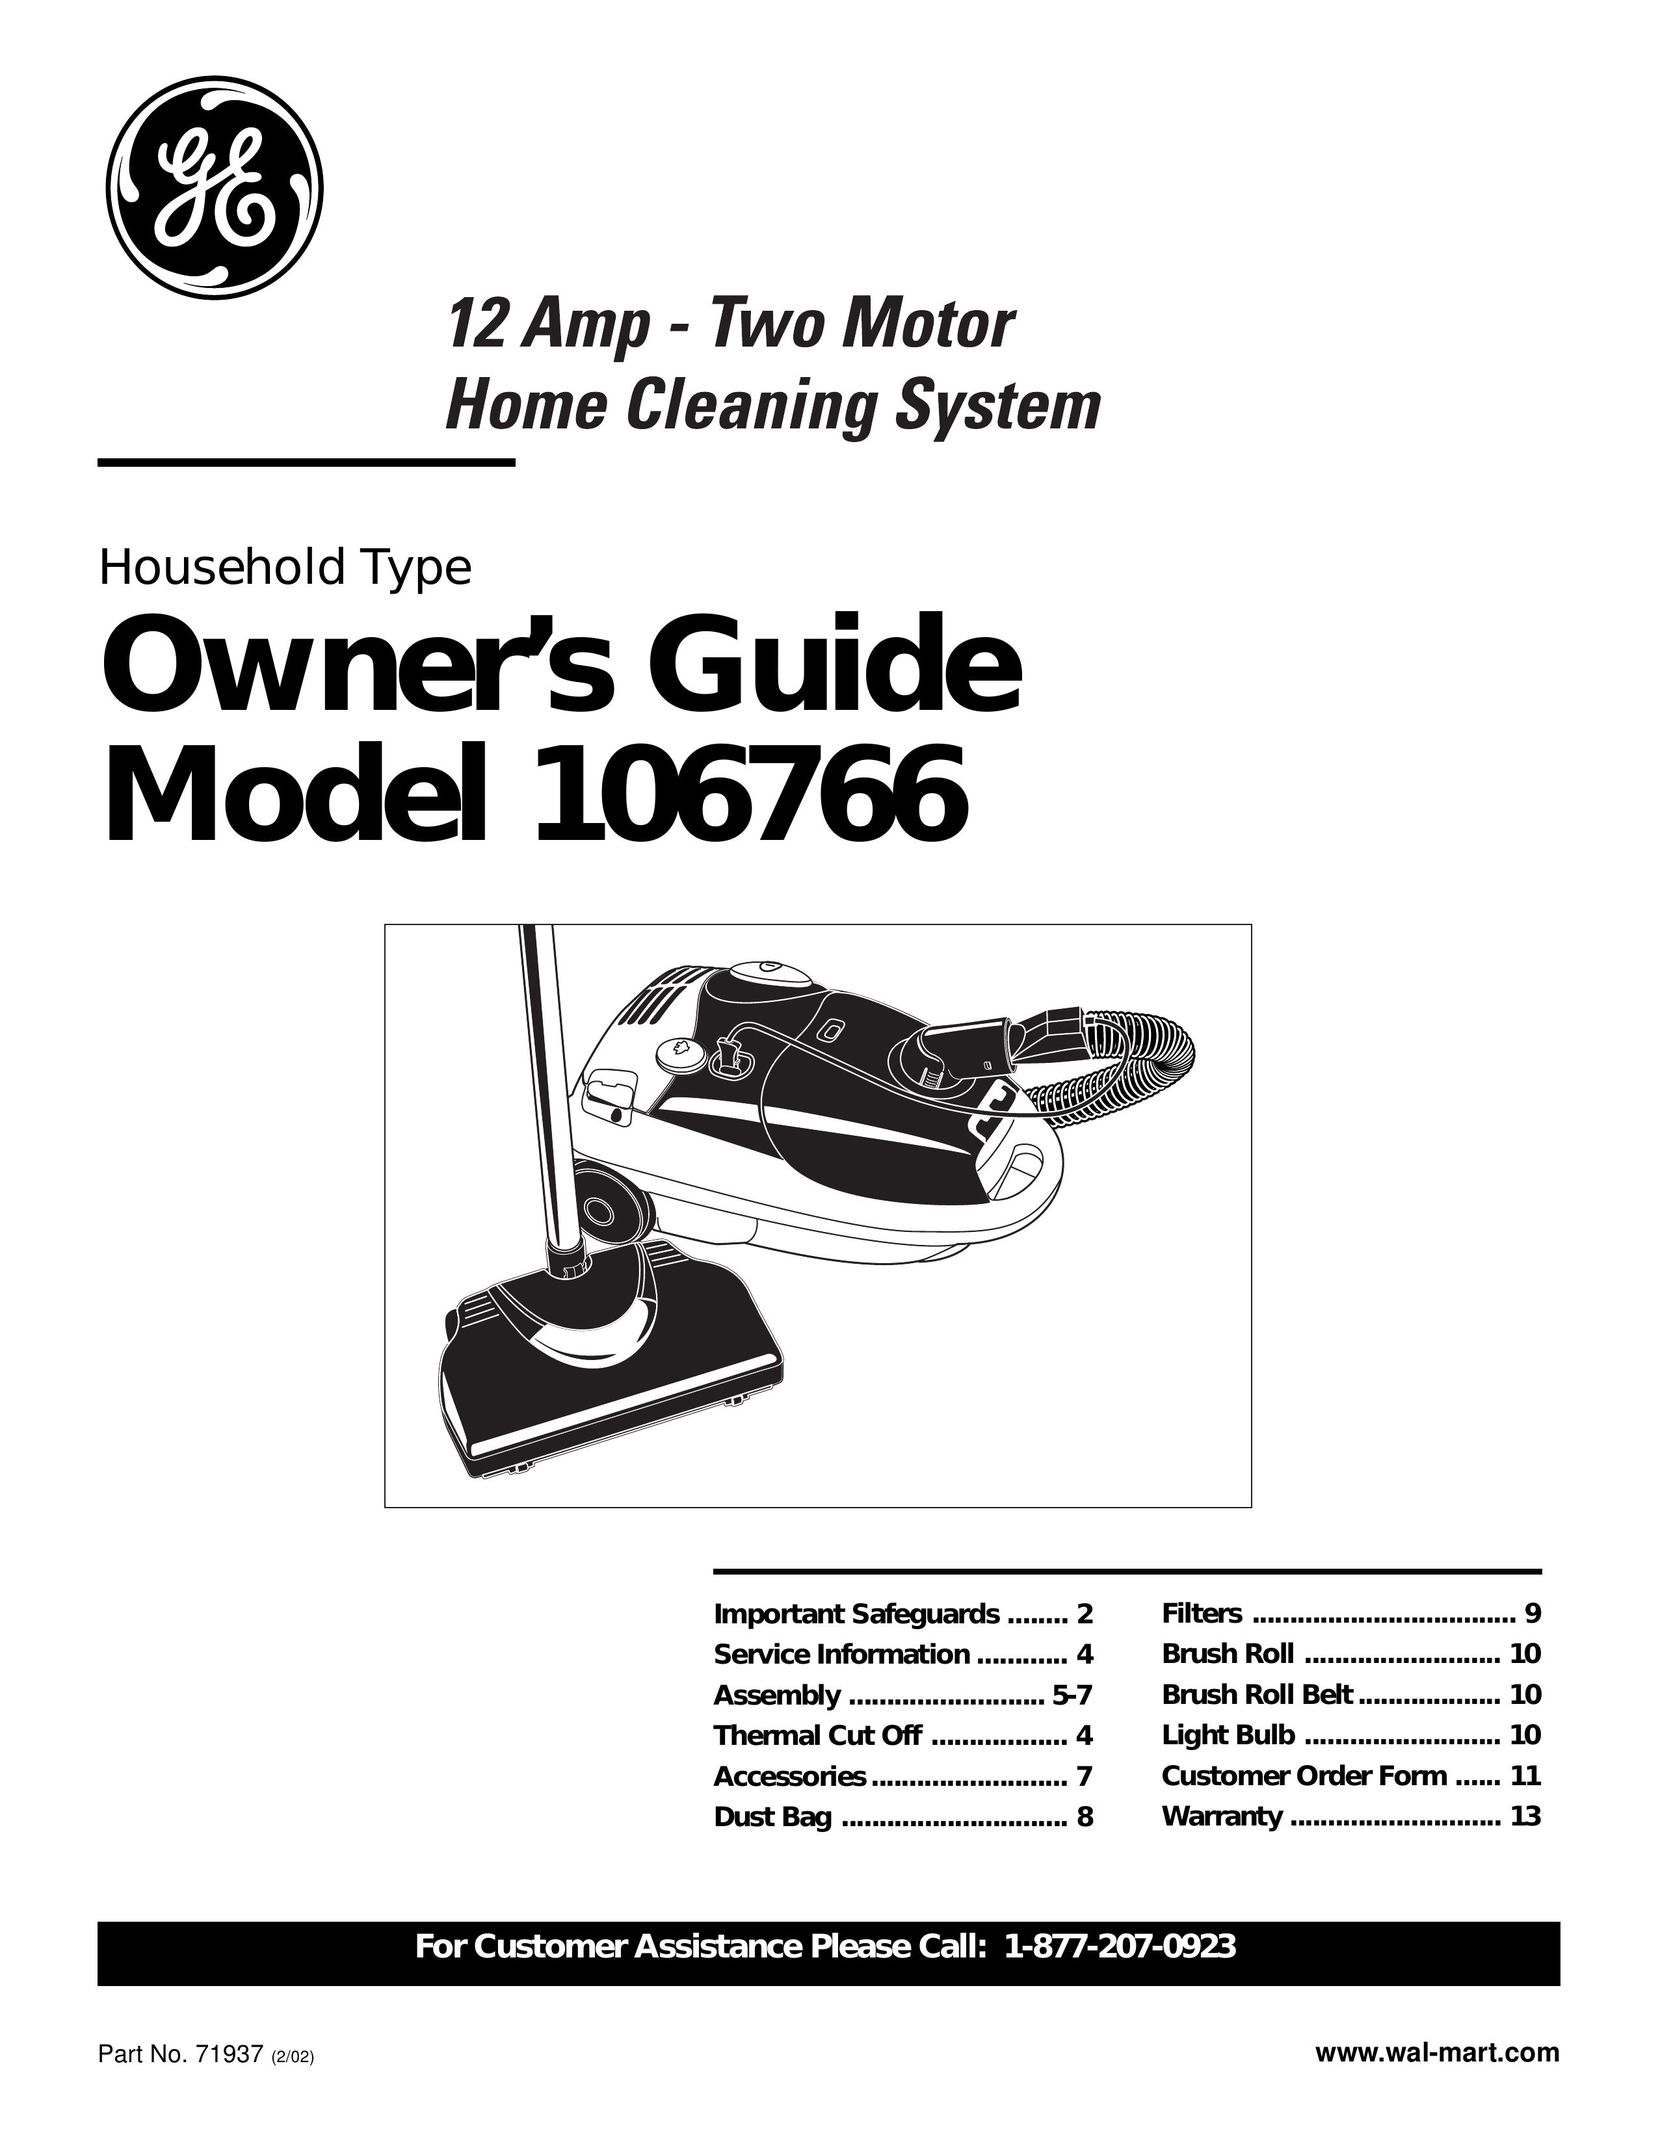 GE 71937 Vacuum Cleaner User Manual